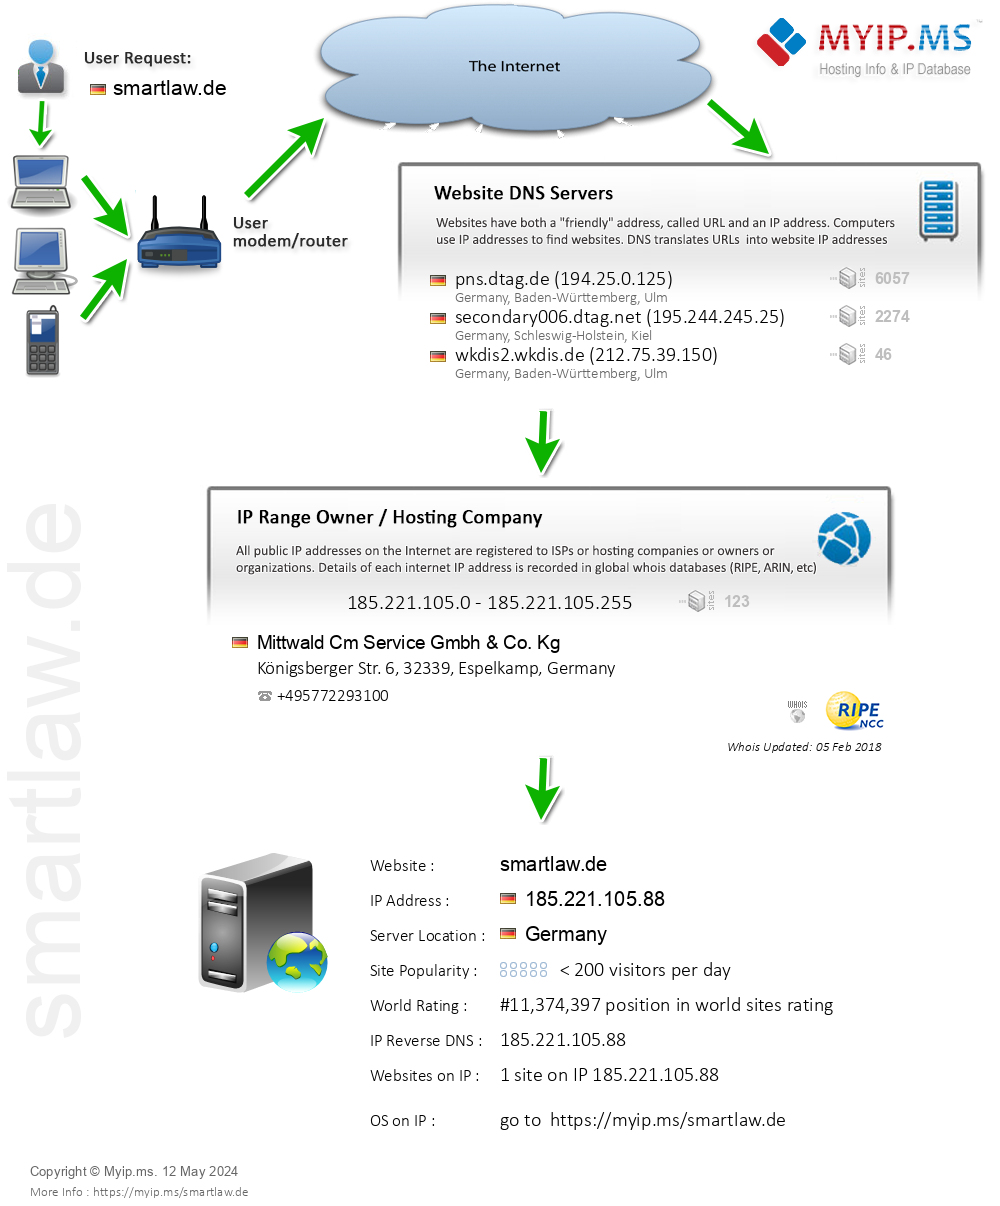 Smartlaw.de - Website Hosting Visual IP Diagram